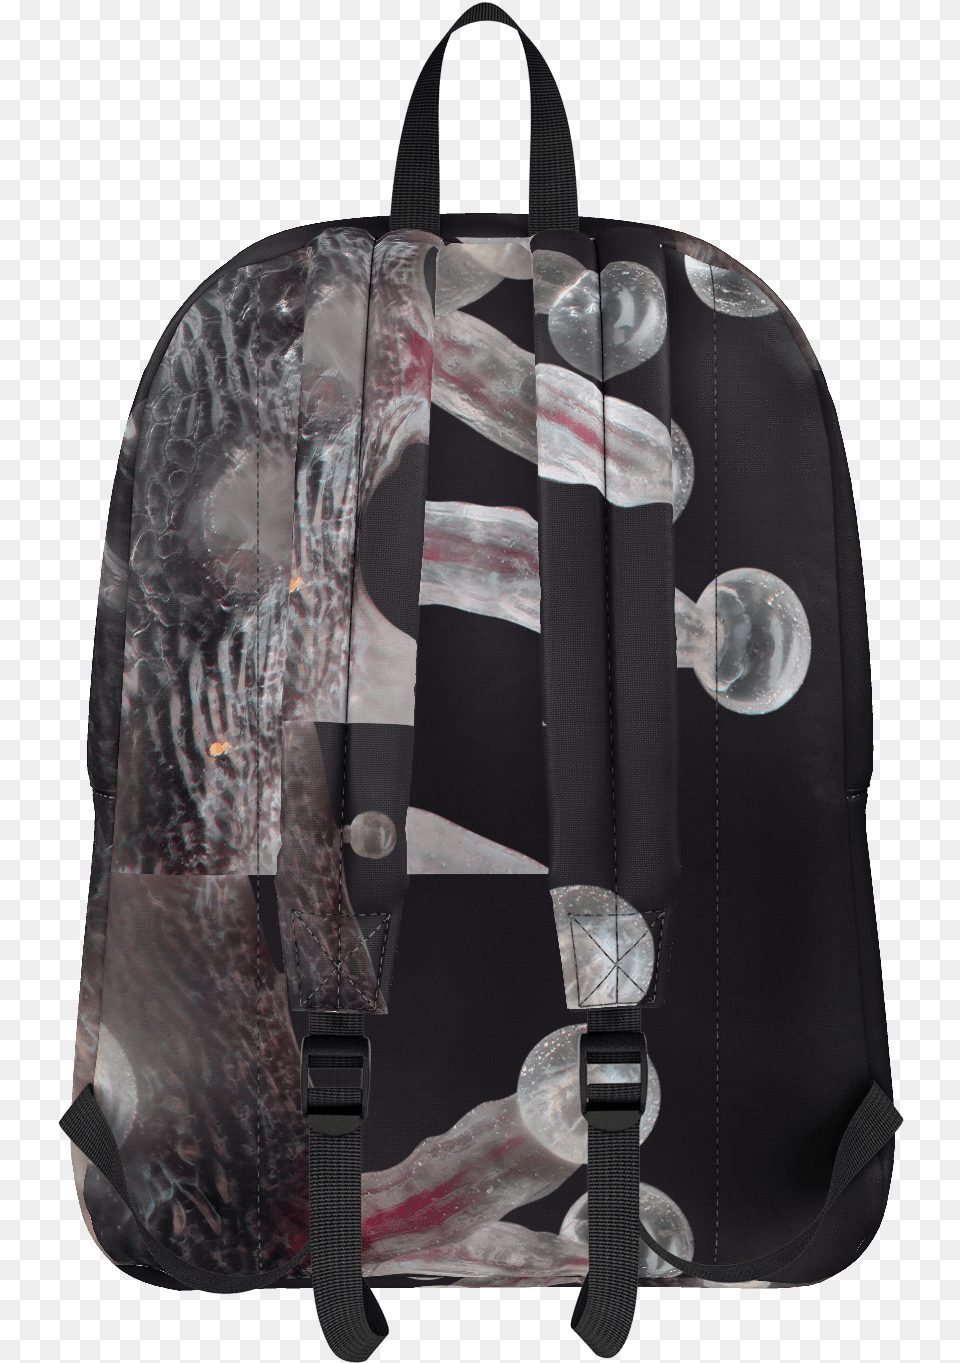 Goyard Trichrome Backpack Bag, Blade, Dagger, Knife, Weapon Free Transparent Png